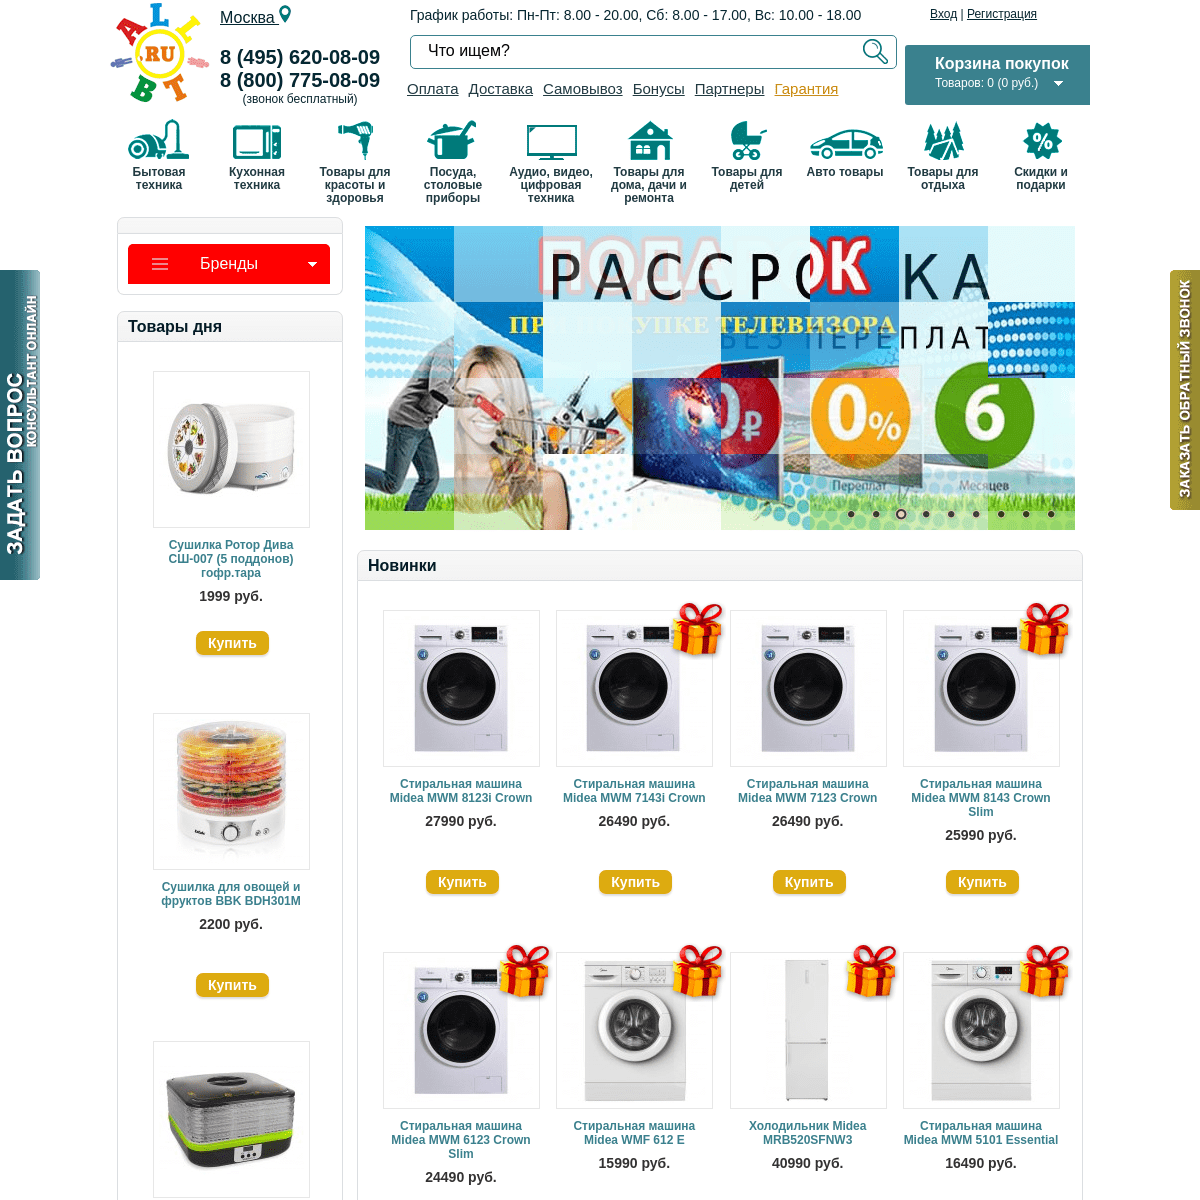 ALL-BT.RU - интернет-магазин бытовой техники